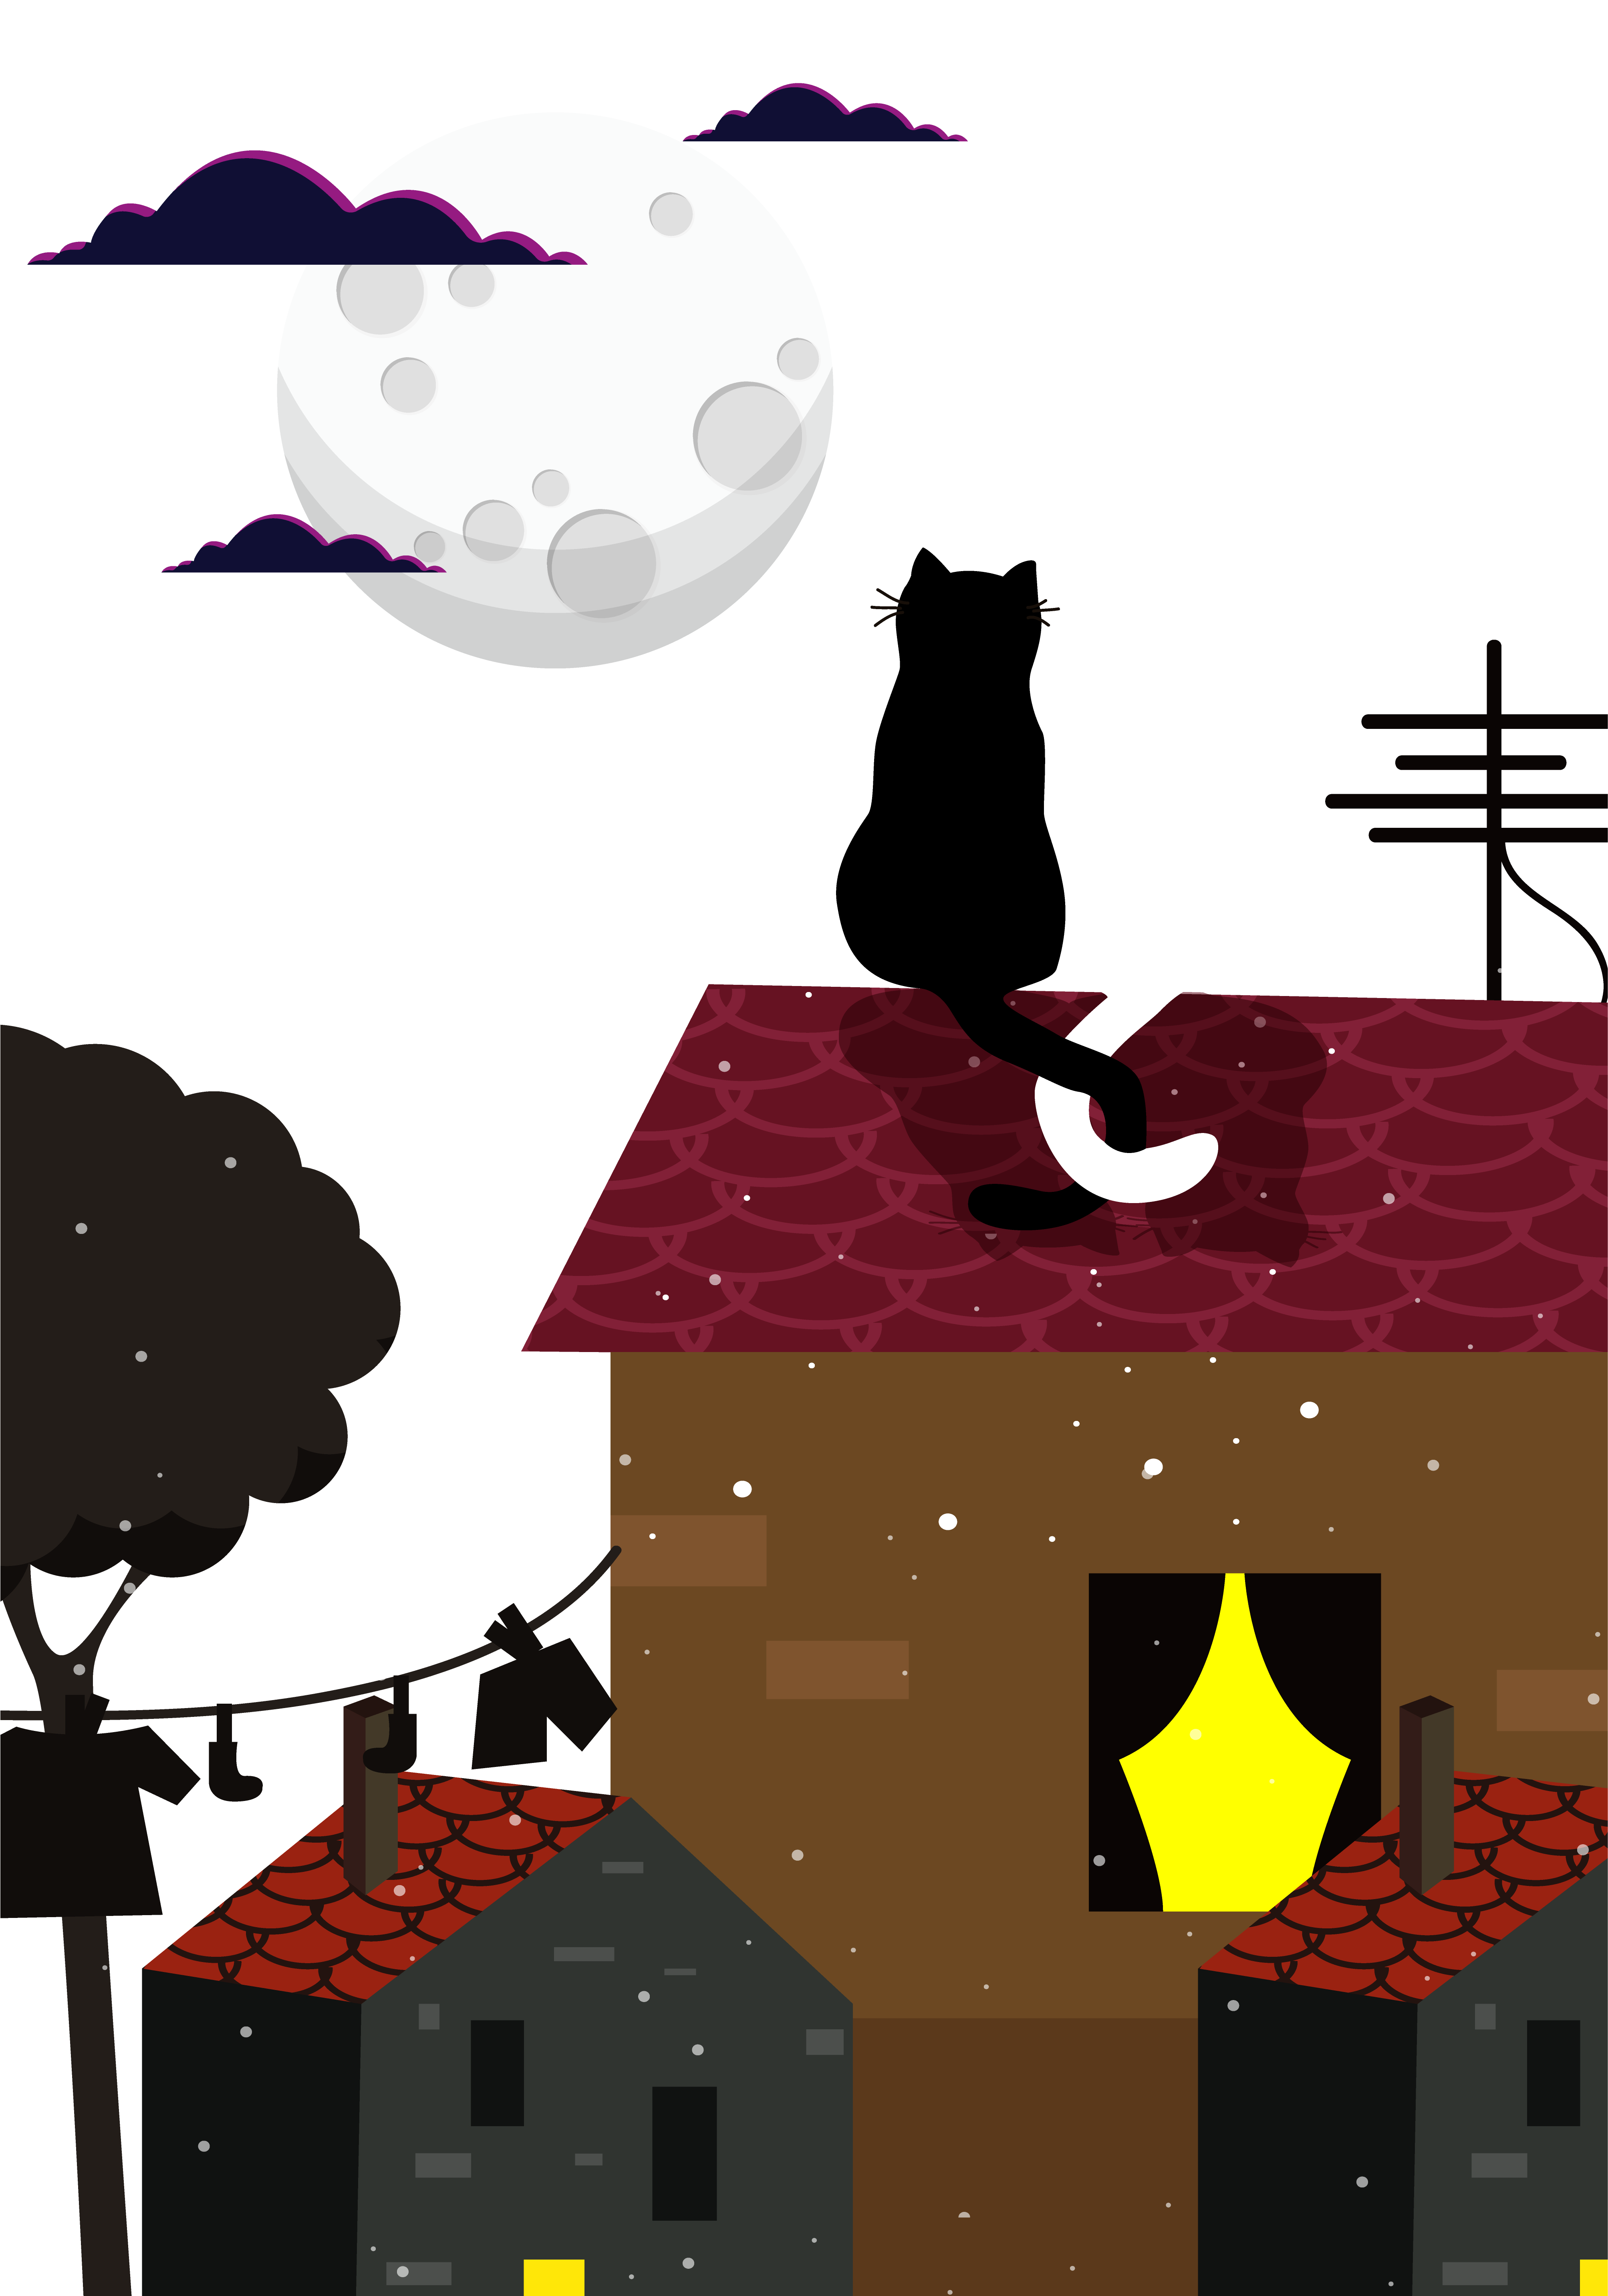 Moonlight Romance Illustration - قط على ضوء القمر (5474x6861)